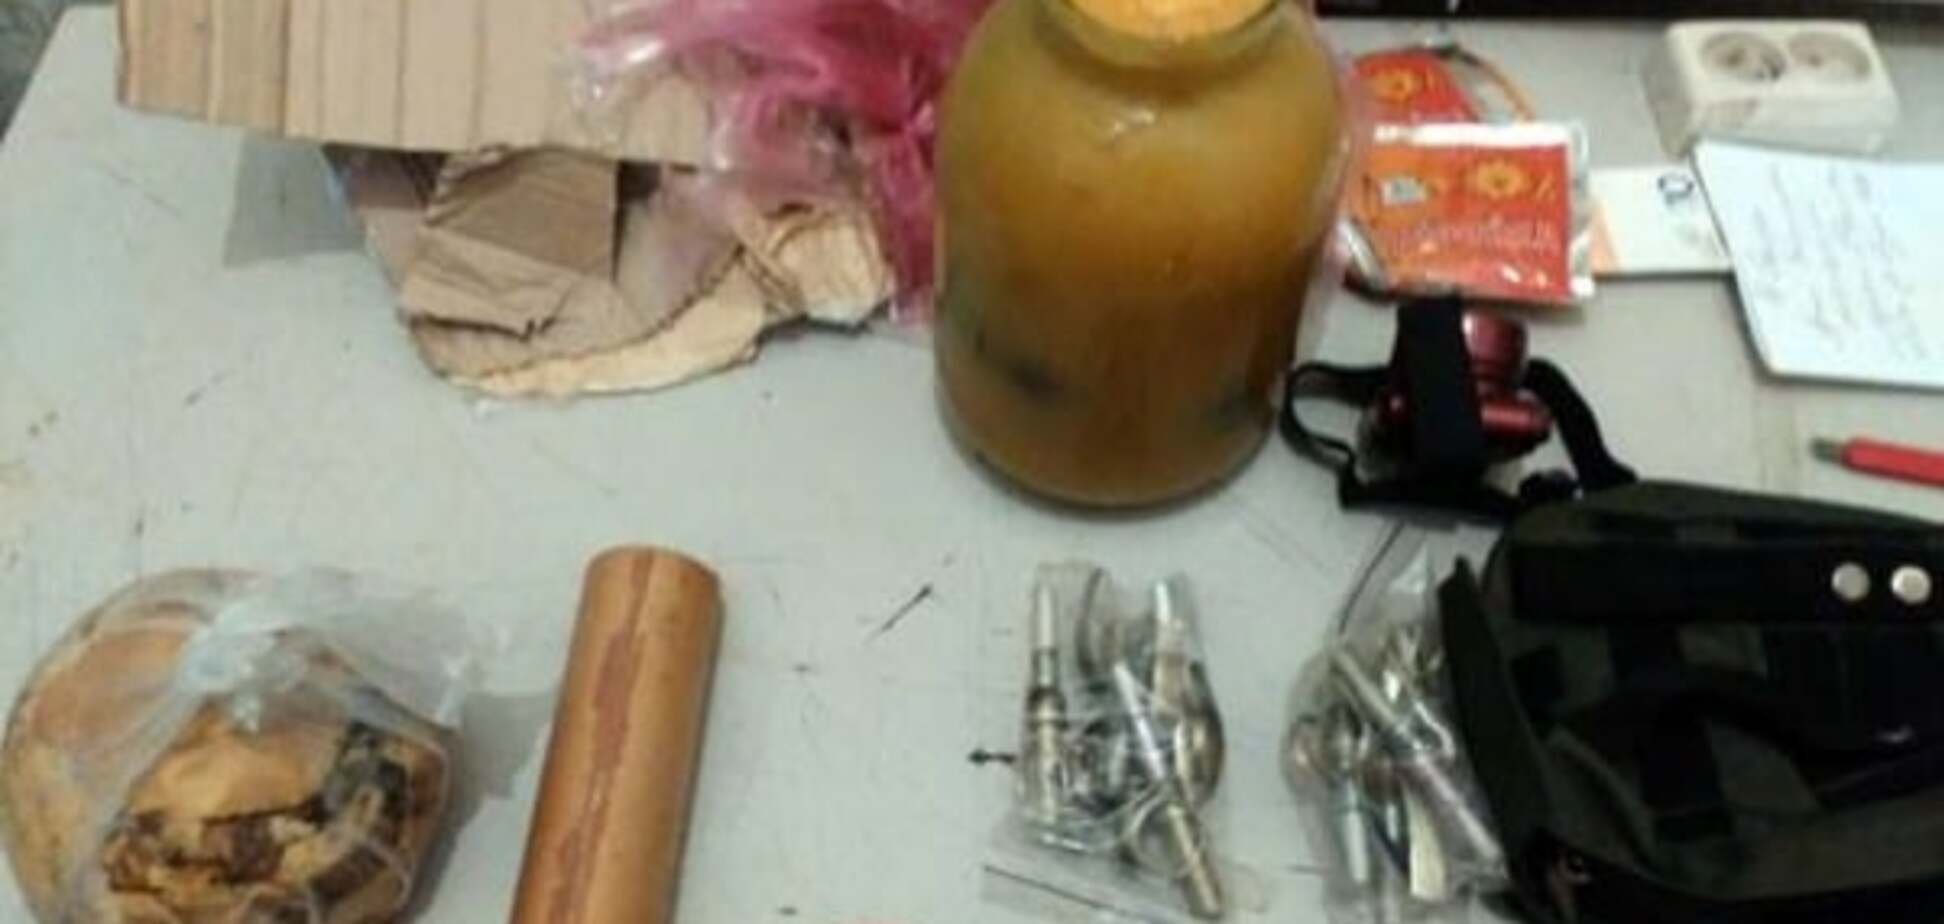 Усе в дім: боєць АТО відправив в Івано-Франківськ банку меду з гранатами. Фотофакт